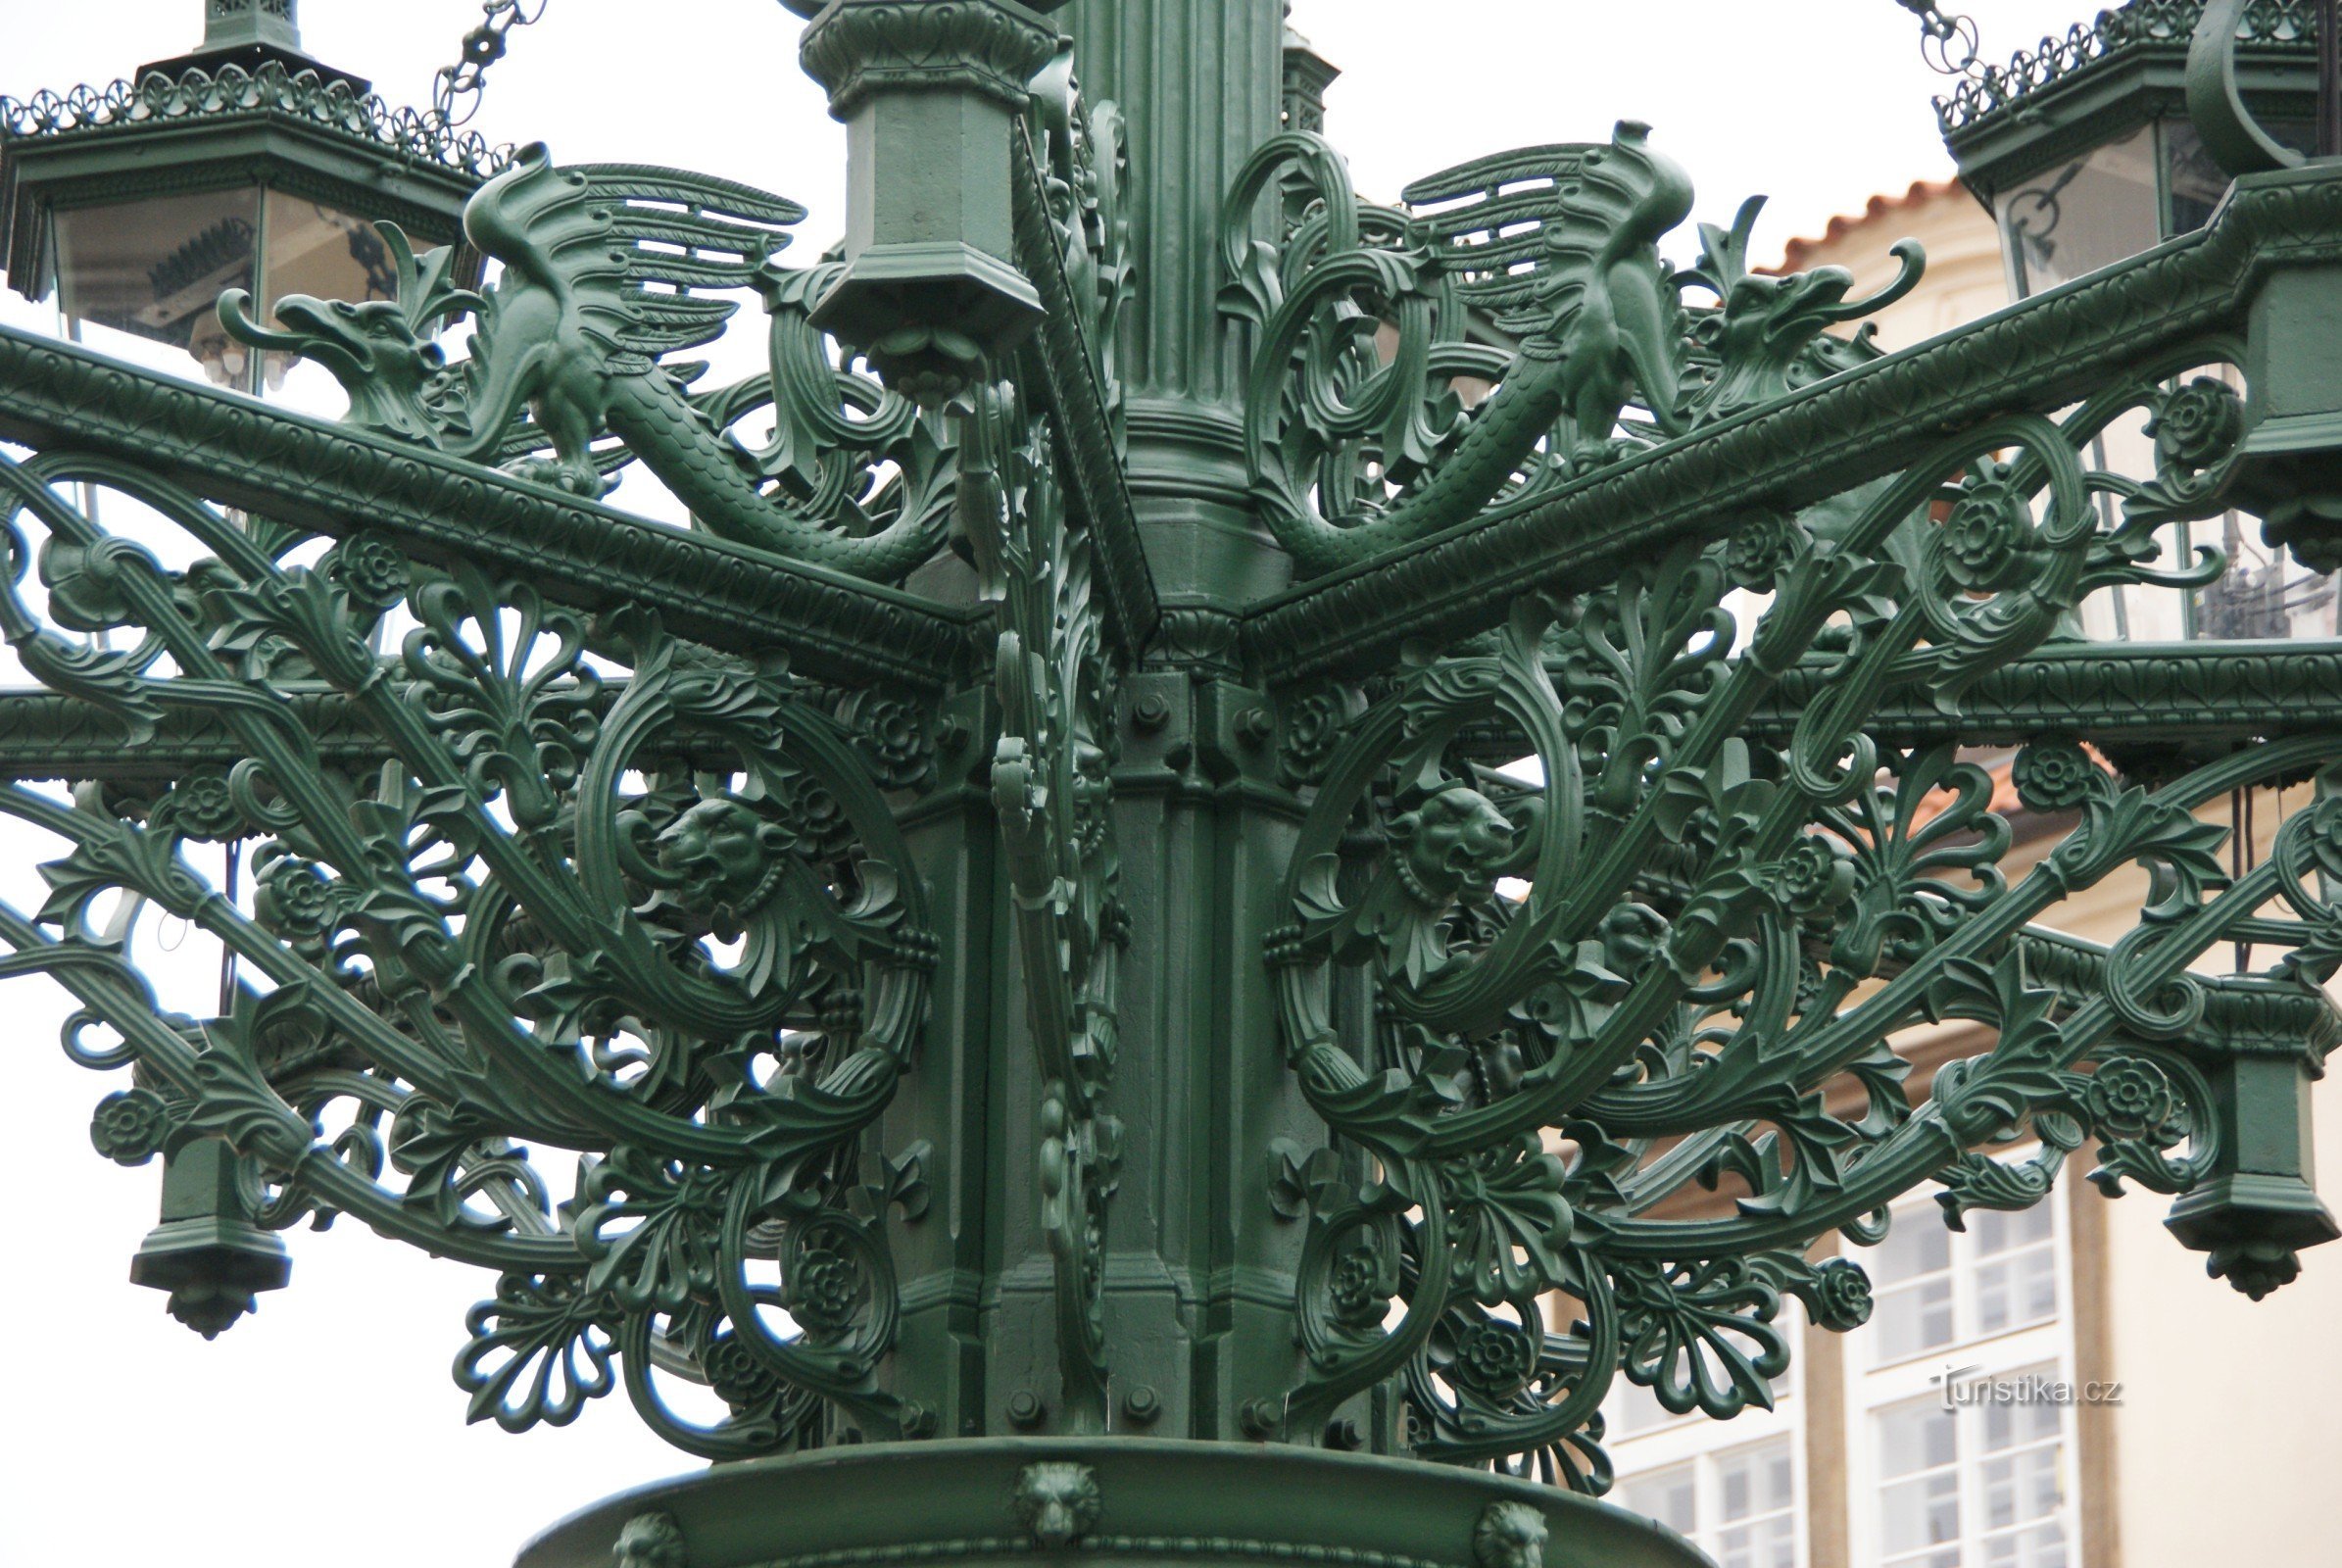 Prag – Hradčany - povijesni rasvjetni stup u ulici Loretánské